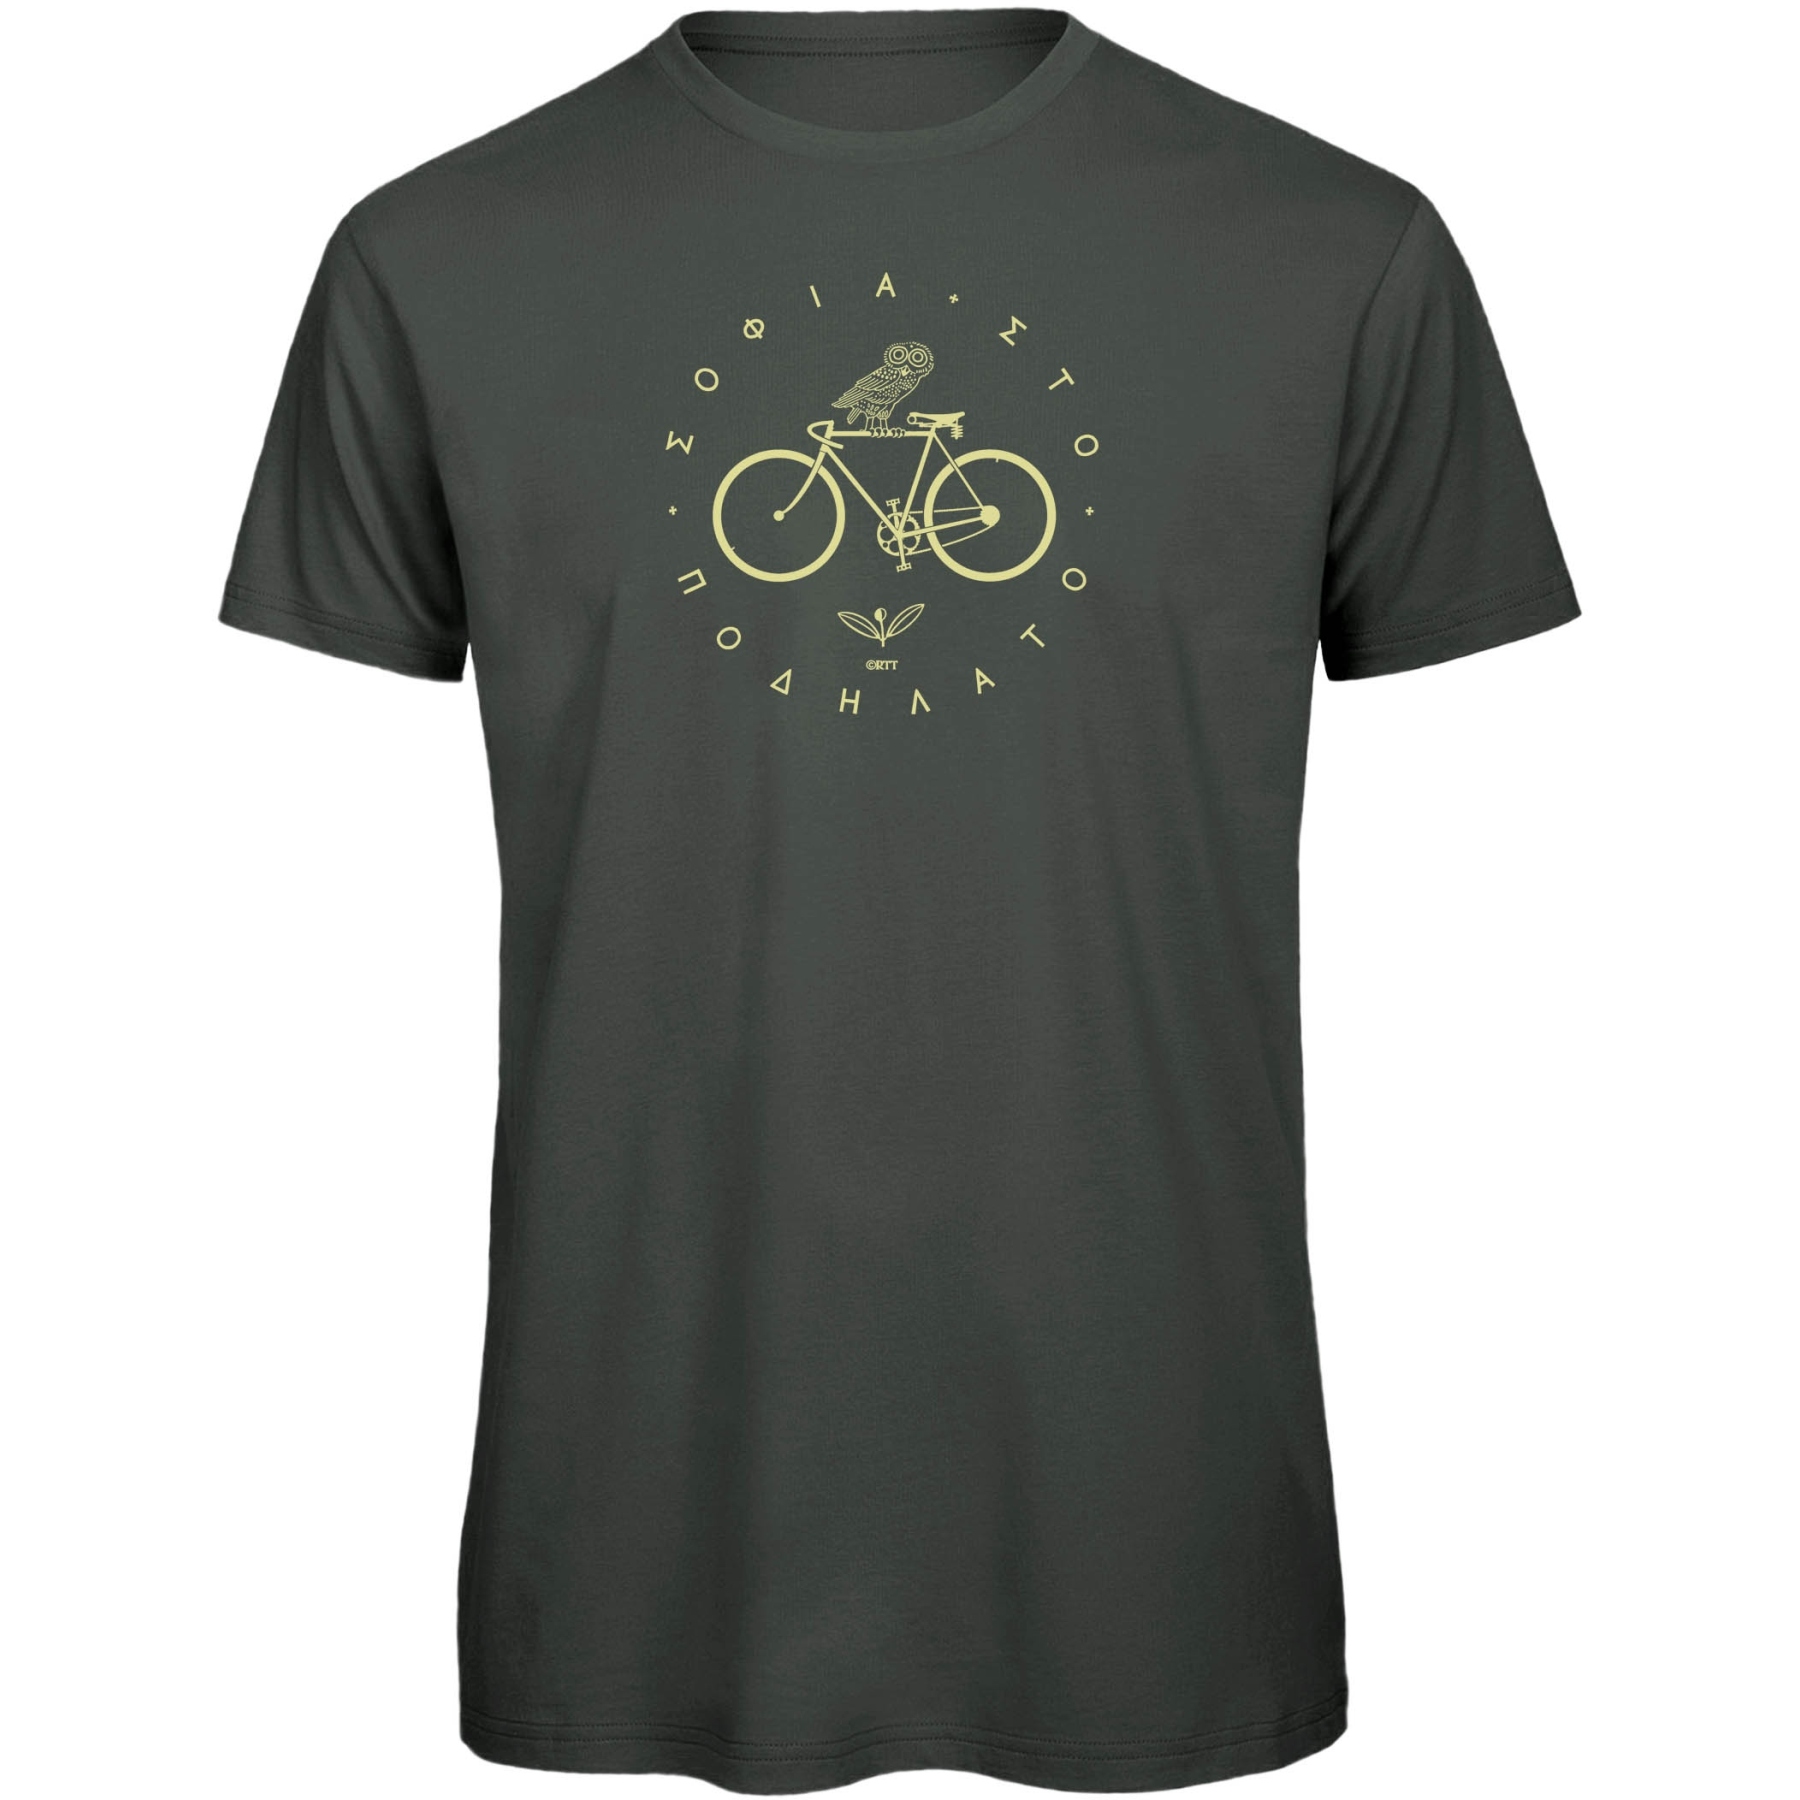 Produktbild von RTTshirts Fahrrad T-Shirt Minerva - dunkelgrau